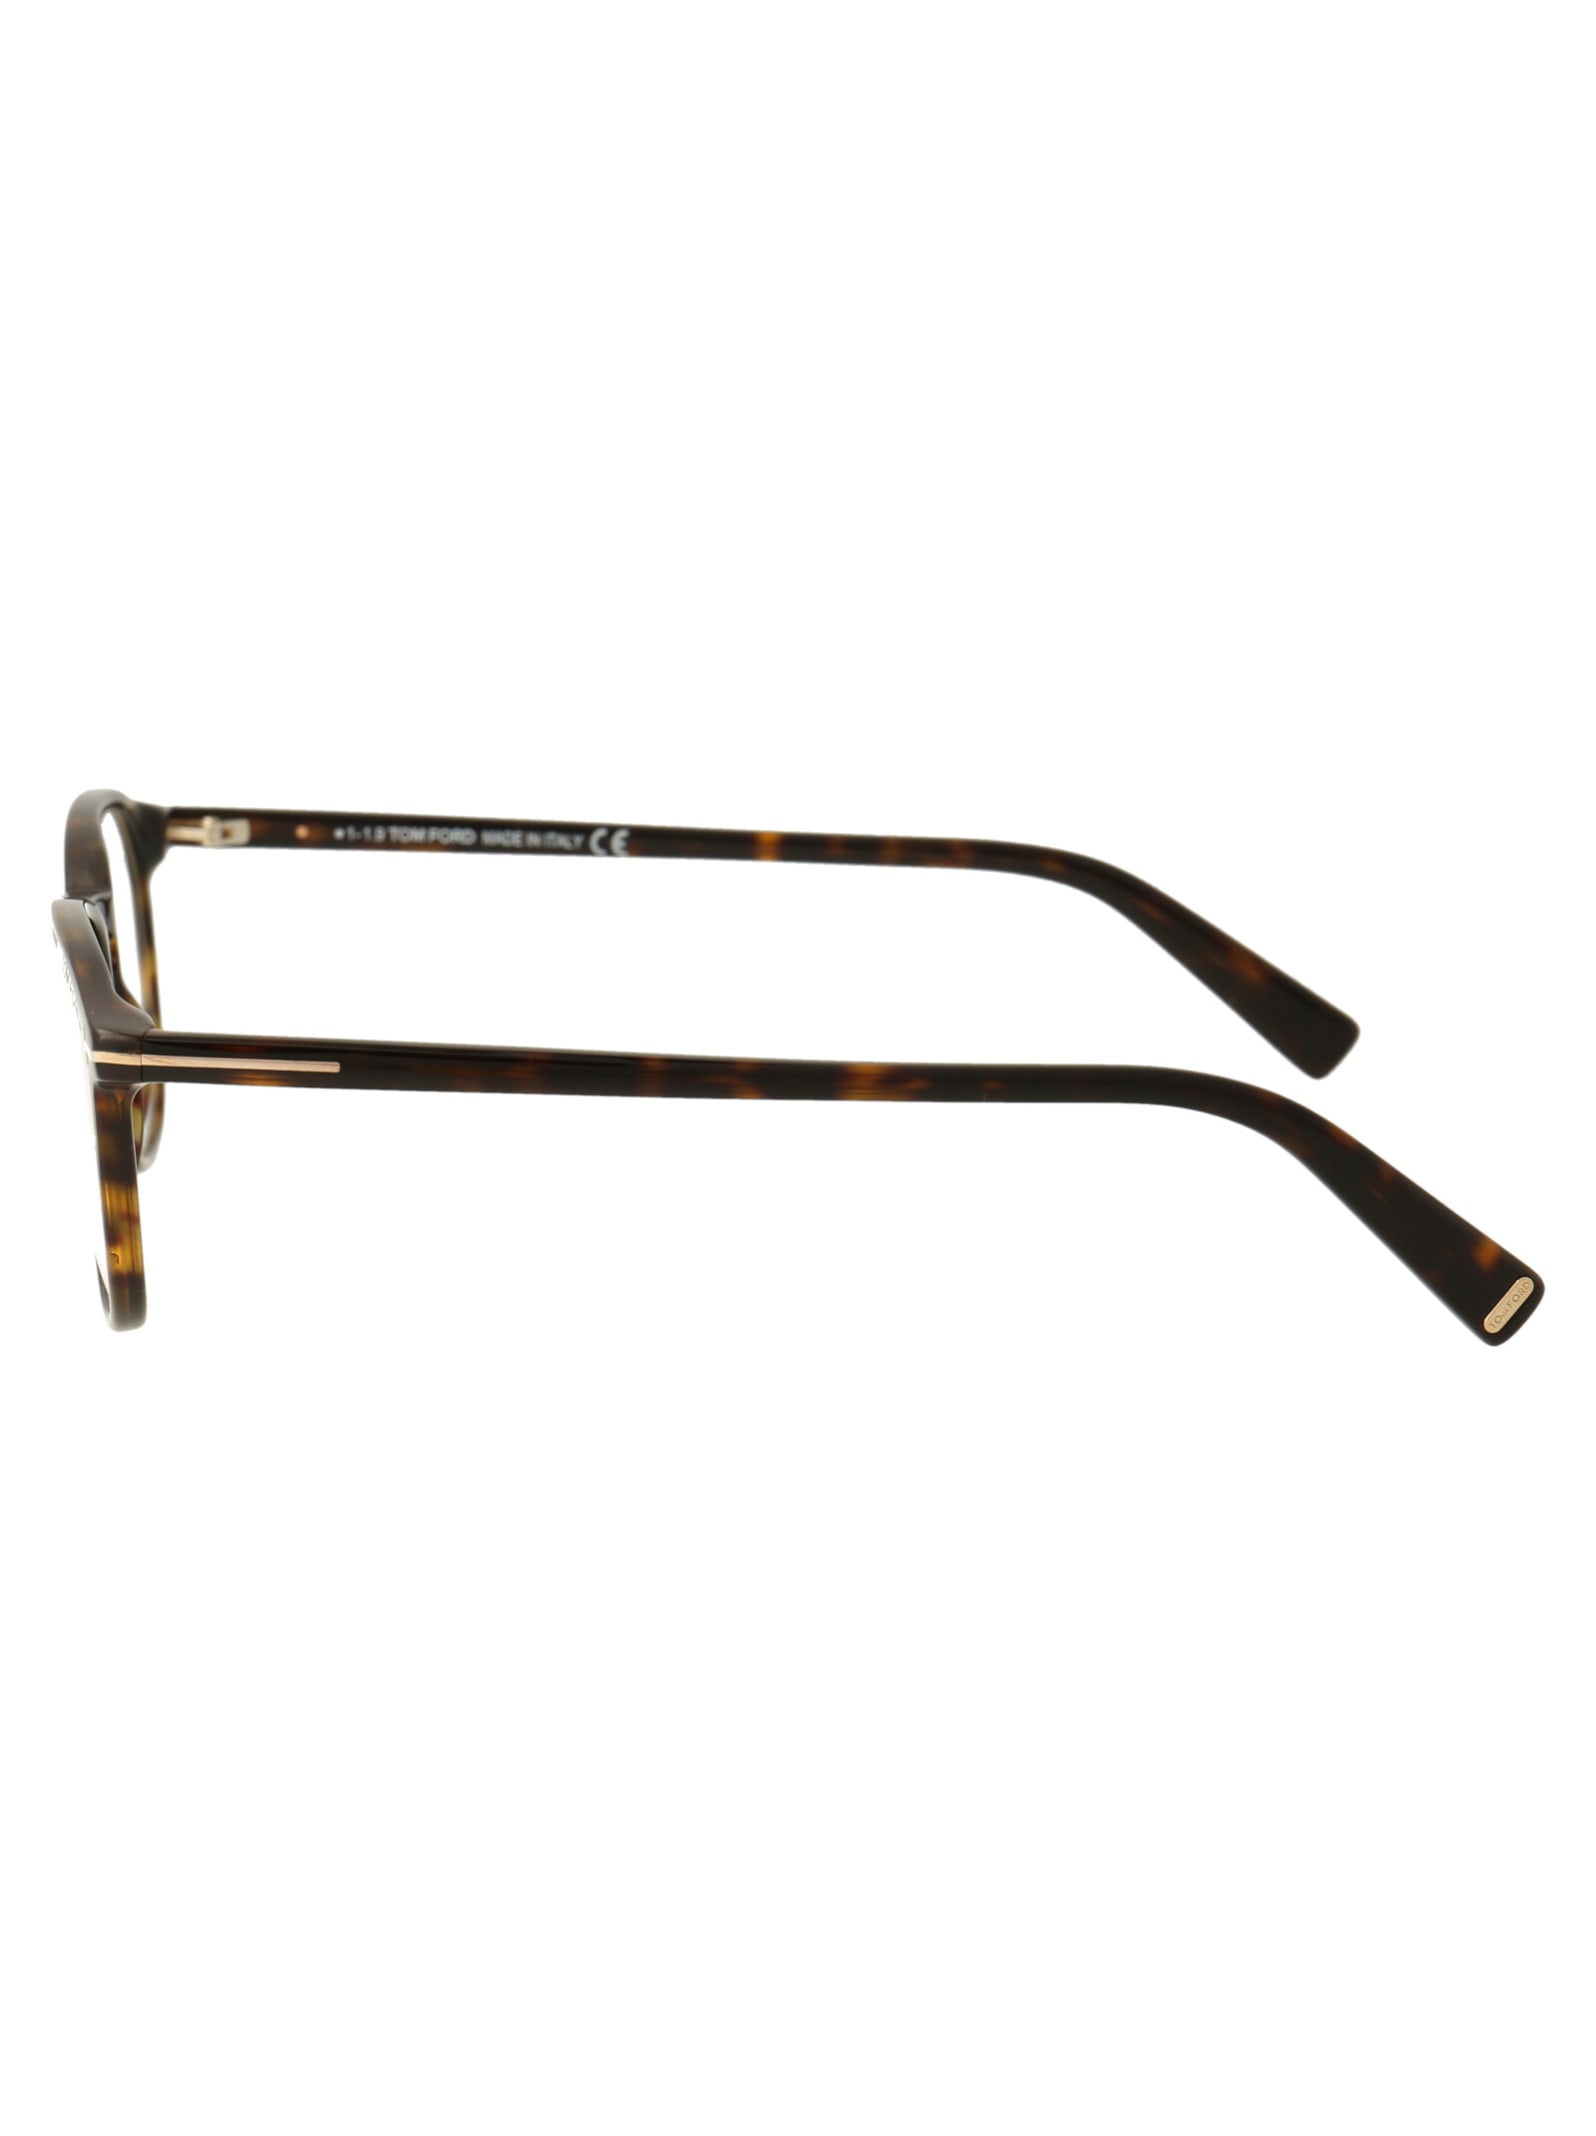 Shop Tom Ford Ft5583-b Glasses In 052 Avana Scura